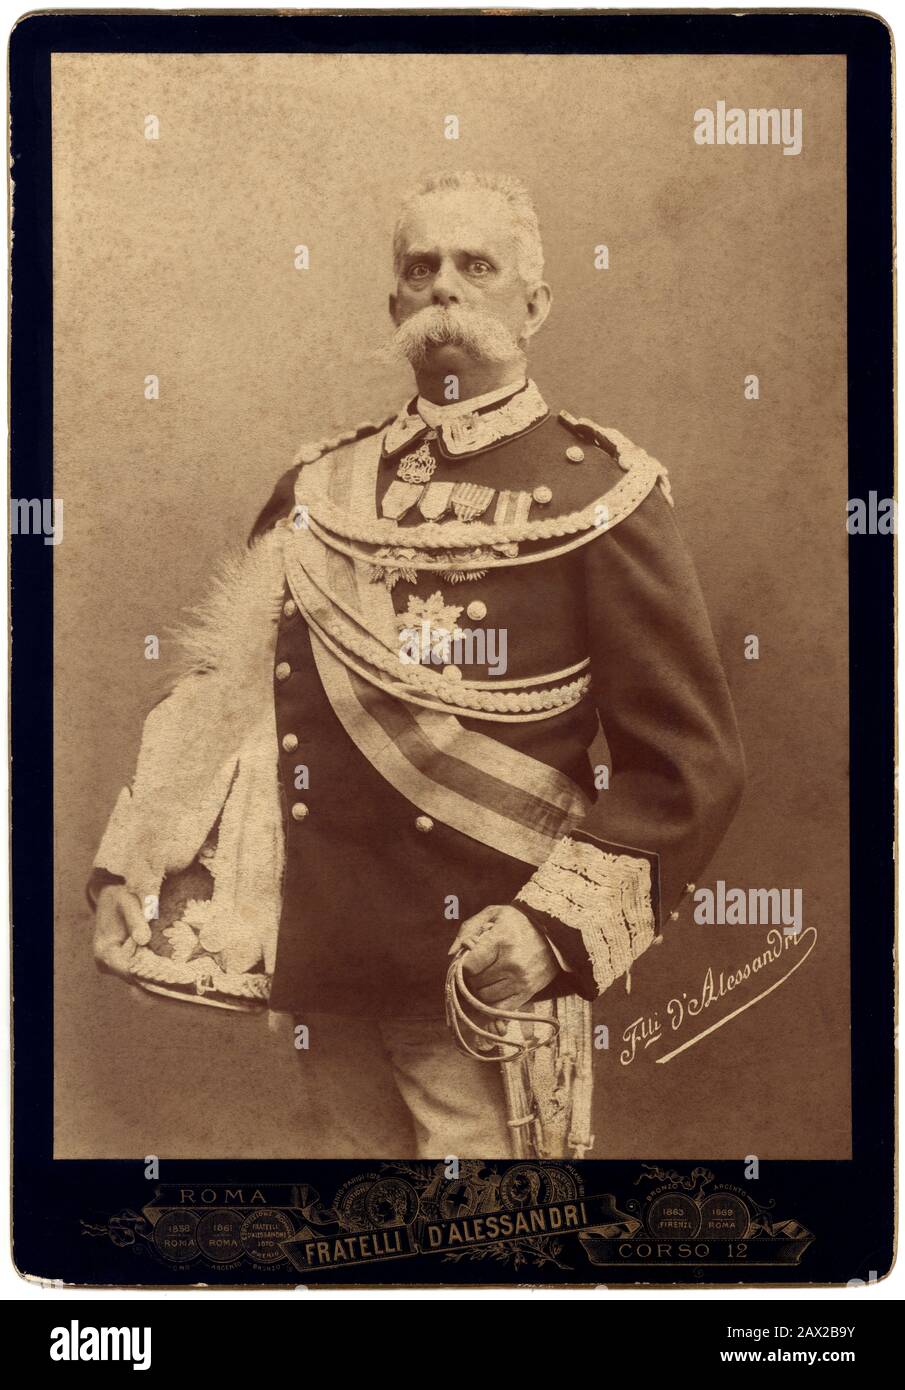 Ca. , ROMA , ITALIEN : Der italienische König UMBERTO I (* 1844 in SAVOIA; † 1900 in Rom), Vater des künftigen Königs VITTORIO EMMANUELE III. Foto von Fratelli ALESSANDRI Roma .- ITALIEN - ITALIEN - CASA SAVOIA - REALI - nobiltà ITALIANA - SAVOYEN - ADEL - KÖNIGTUM - GESCHICHTE - FOTO STORICHE - Königtum - nobili - nobiltà - Porträt - Ritratto - Militäruniform - Divisa uniforme militare - Baffi - Schnurrbart - spada - Schwert - Schwert Belle EPOQUE - Hut - cappello - Kragen - Colletto - RE - REALI --- Archivio GBB Stockfoto